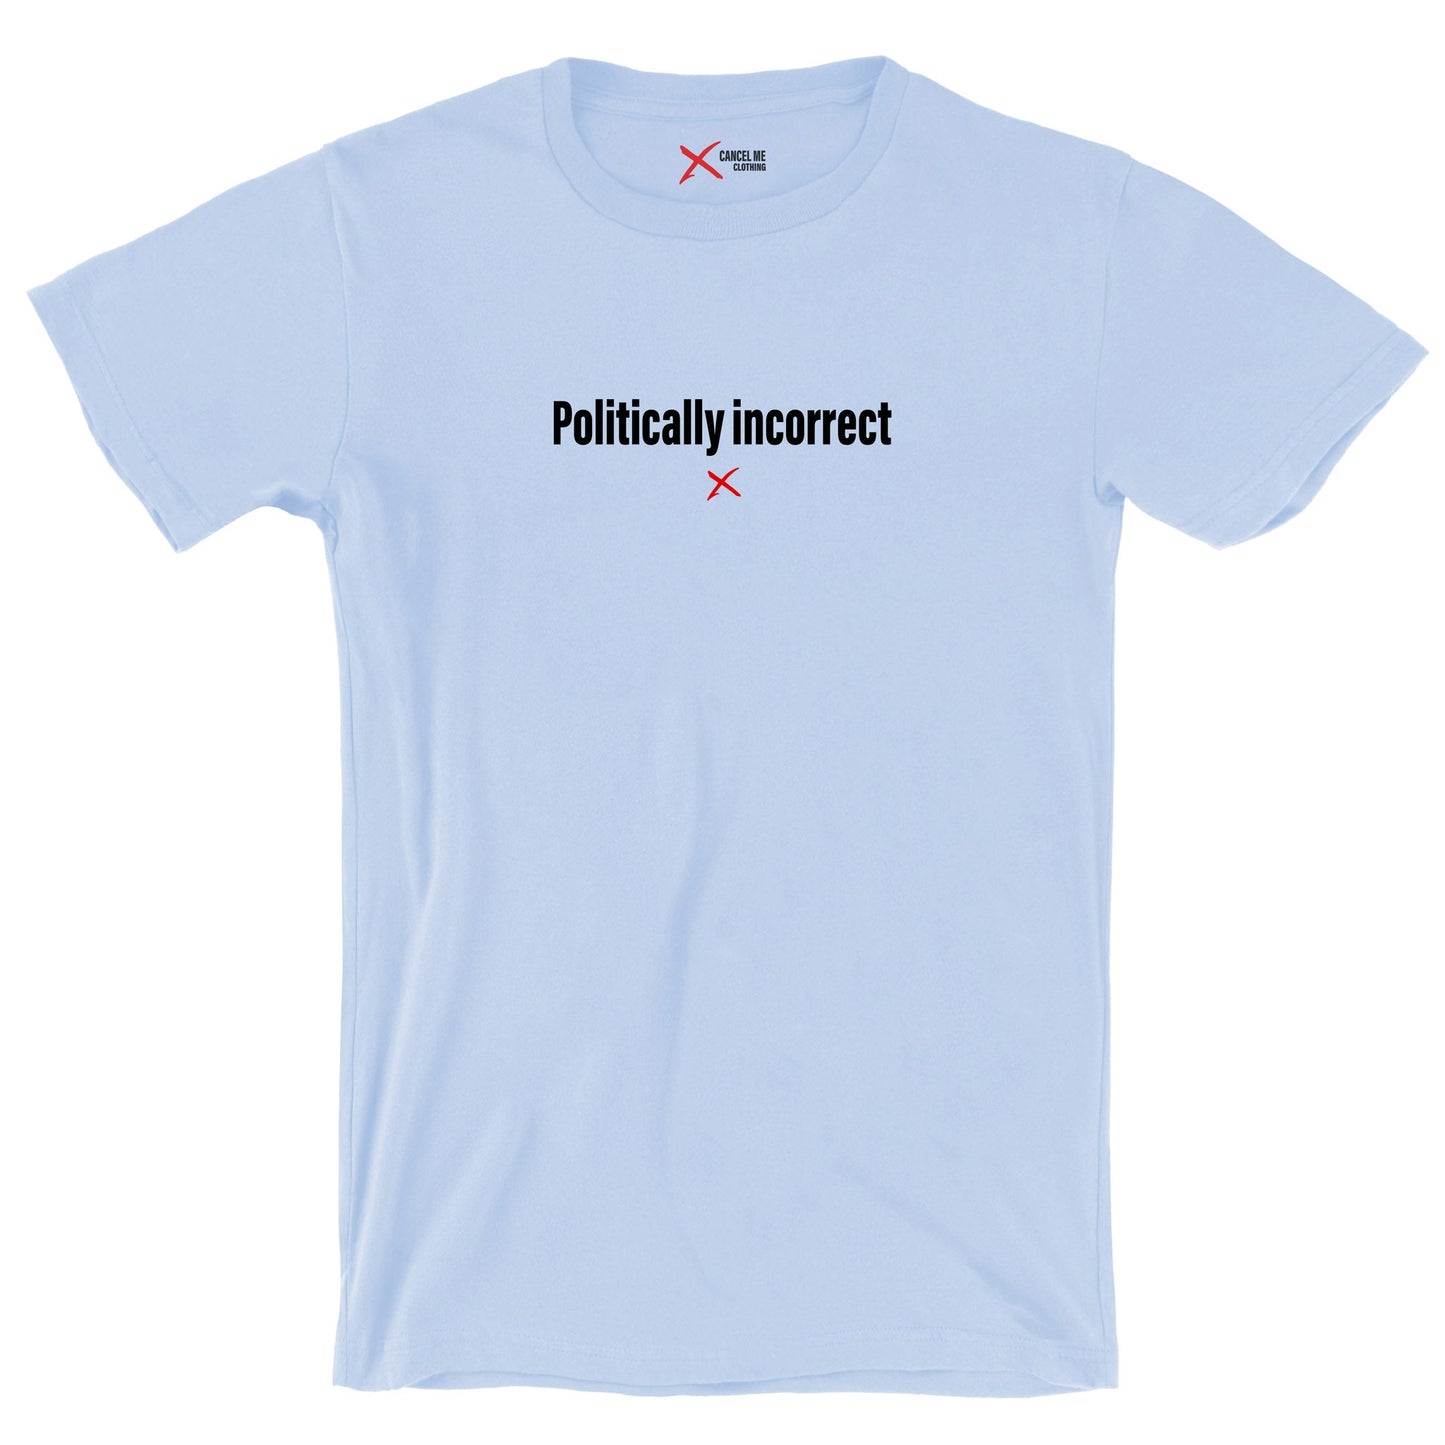 Politically incorrect - Shirt